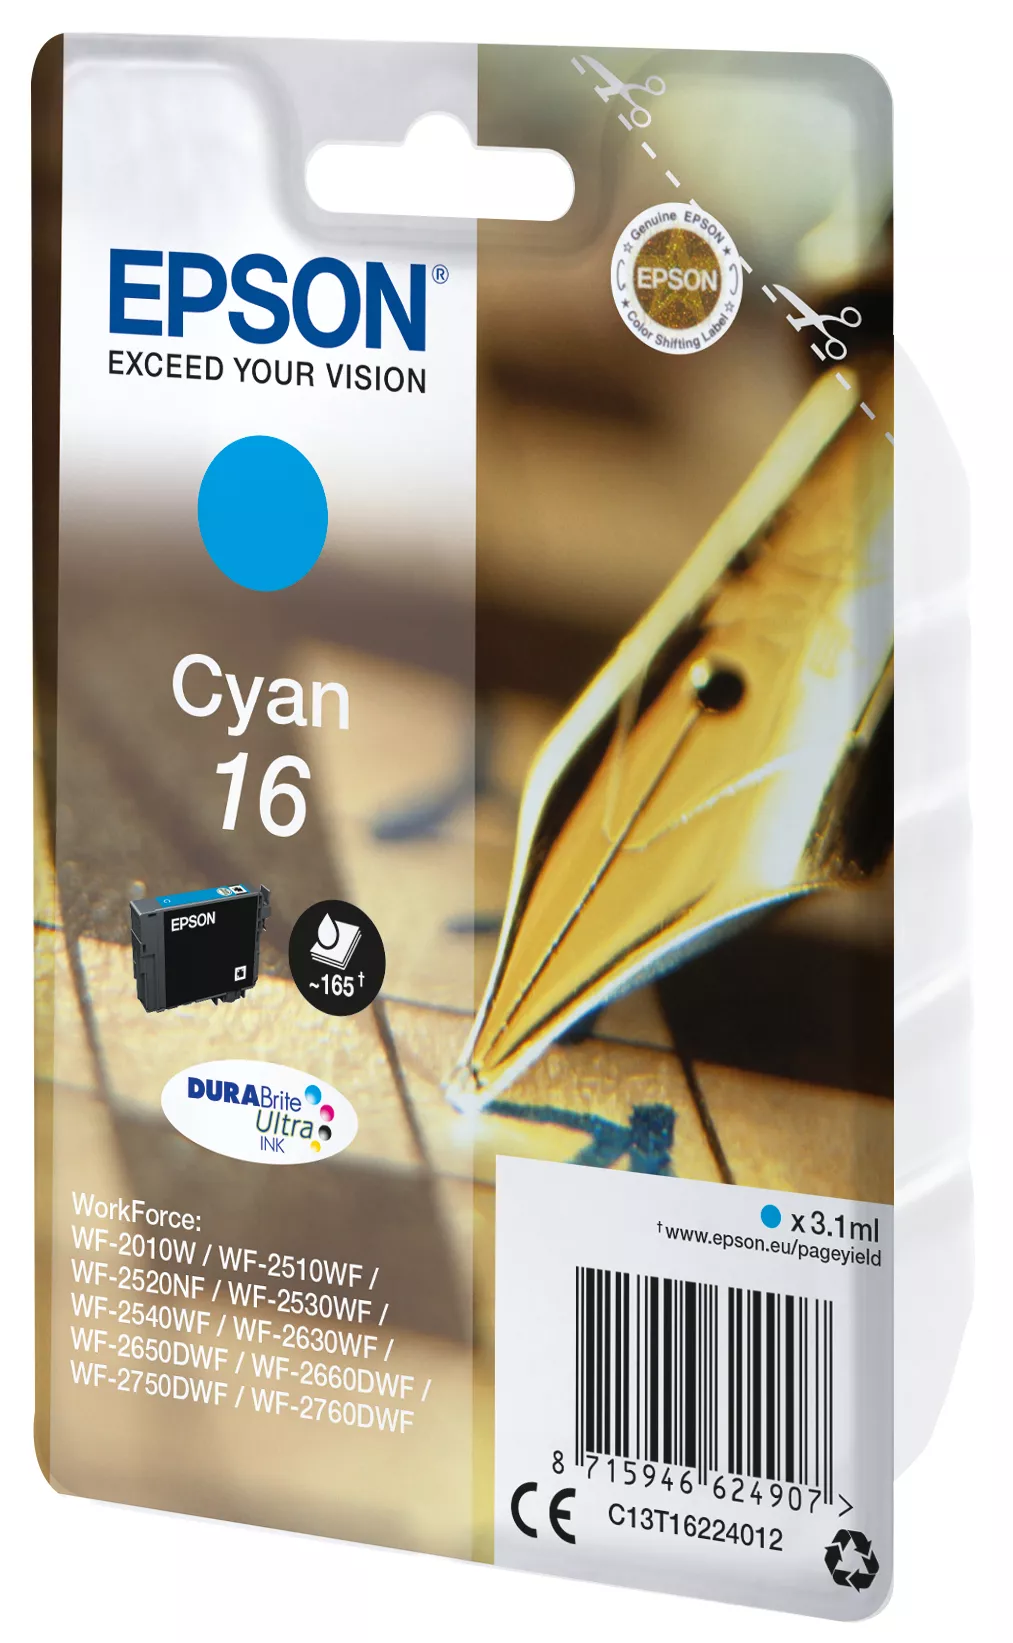 Vente EPSON 16 cartouche dencre cyan capacité standard 3.1ml Epson au meilleur prix - visuel 2